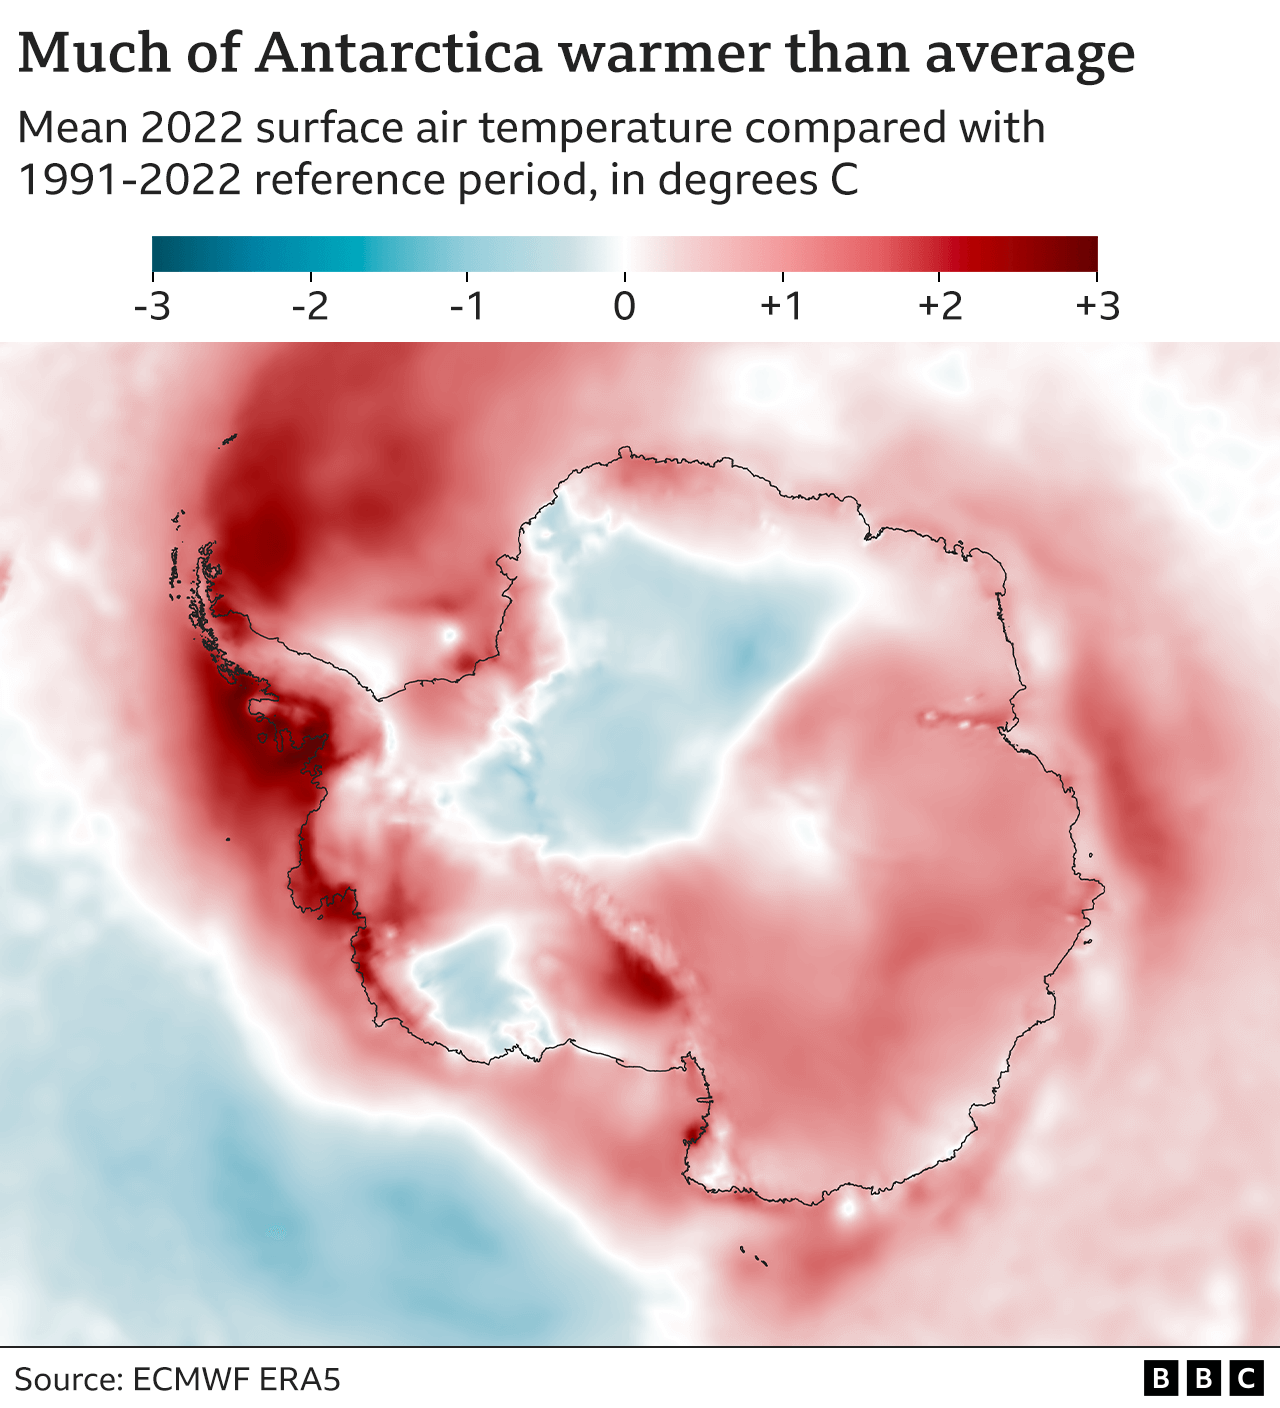 Mapa de la Antártida con sombreado de color para representar la diferencia entre la temperatura media del aire en superficie en 2022 y la temperatura media durante el periodo de referencia 1991-2020. Aparte de dos zonas azules más frías, el continente es mayoritariamente rojo, aproximadamente 1 grado por encima de la media. Las zonas sobre la península son de un rojo oscuro, hasta 3 grados por encima de la media.